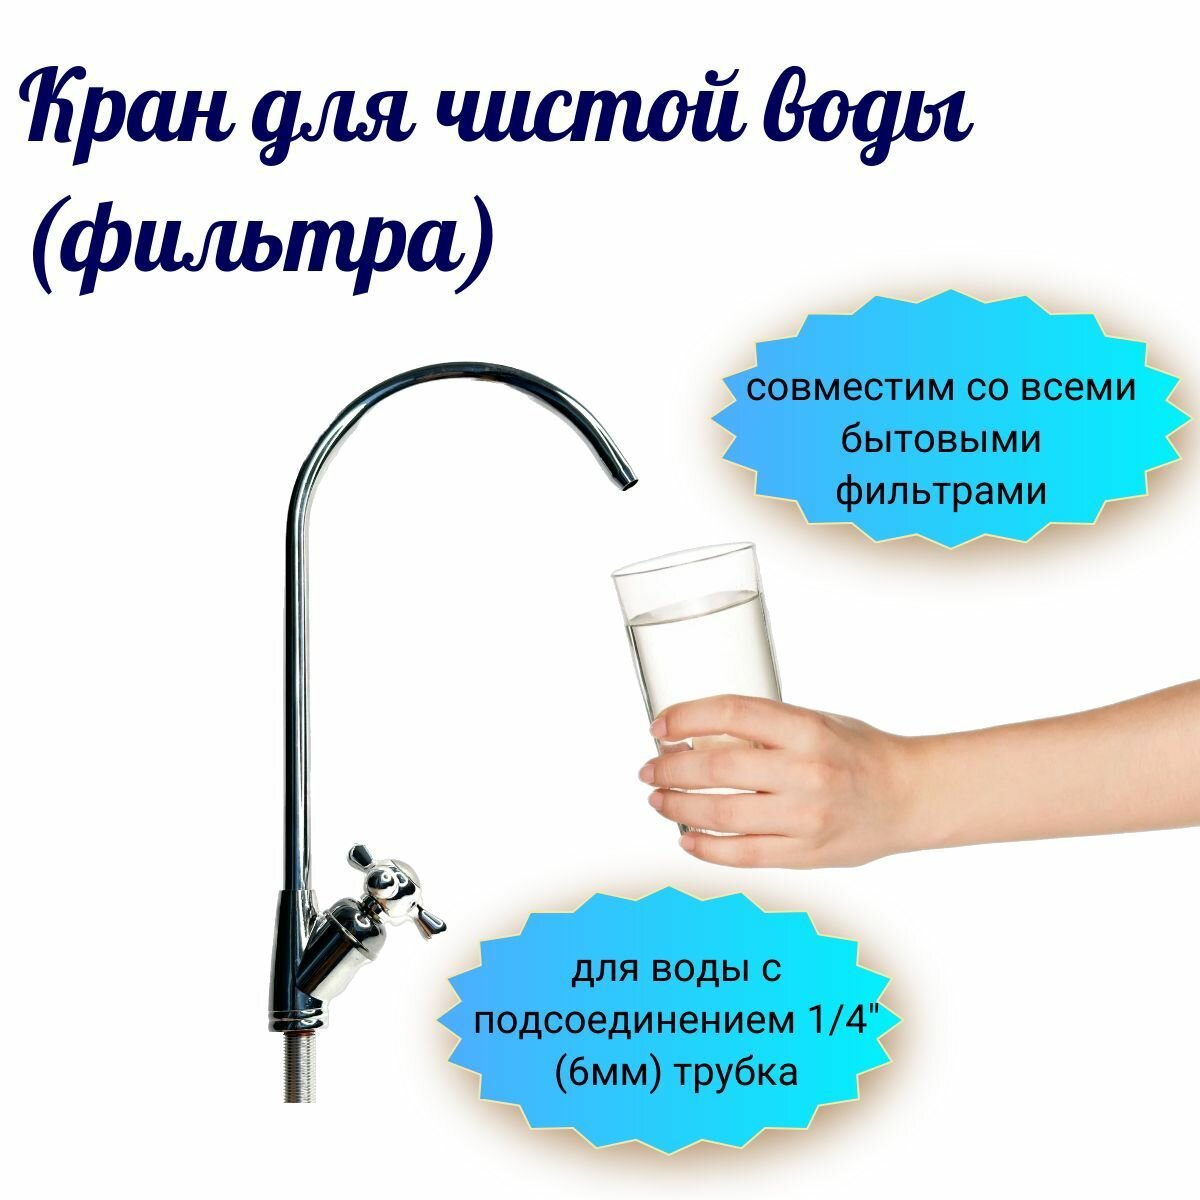 Кран для чистой воды (фильтра) совместим со всеми бытовыми фильтрами для воды с подсоединением 1/4"(6мм) трубка